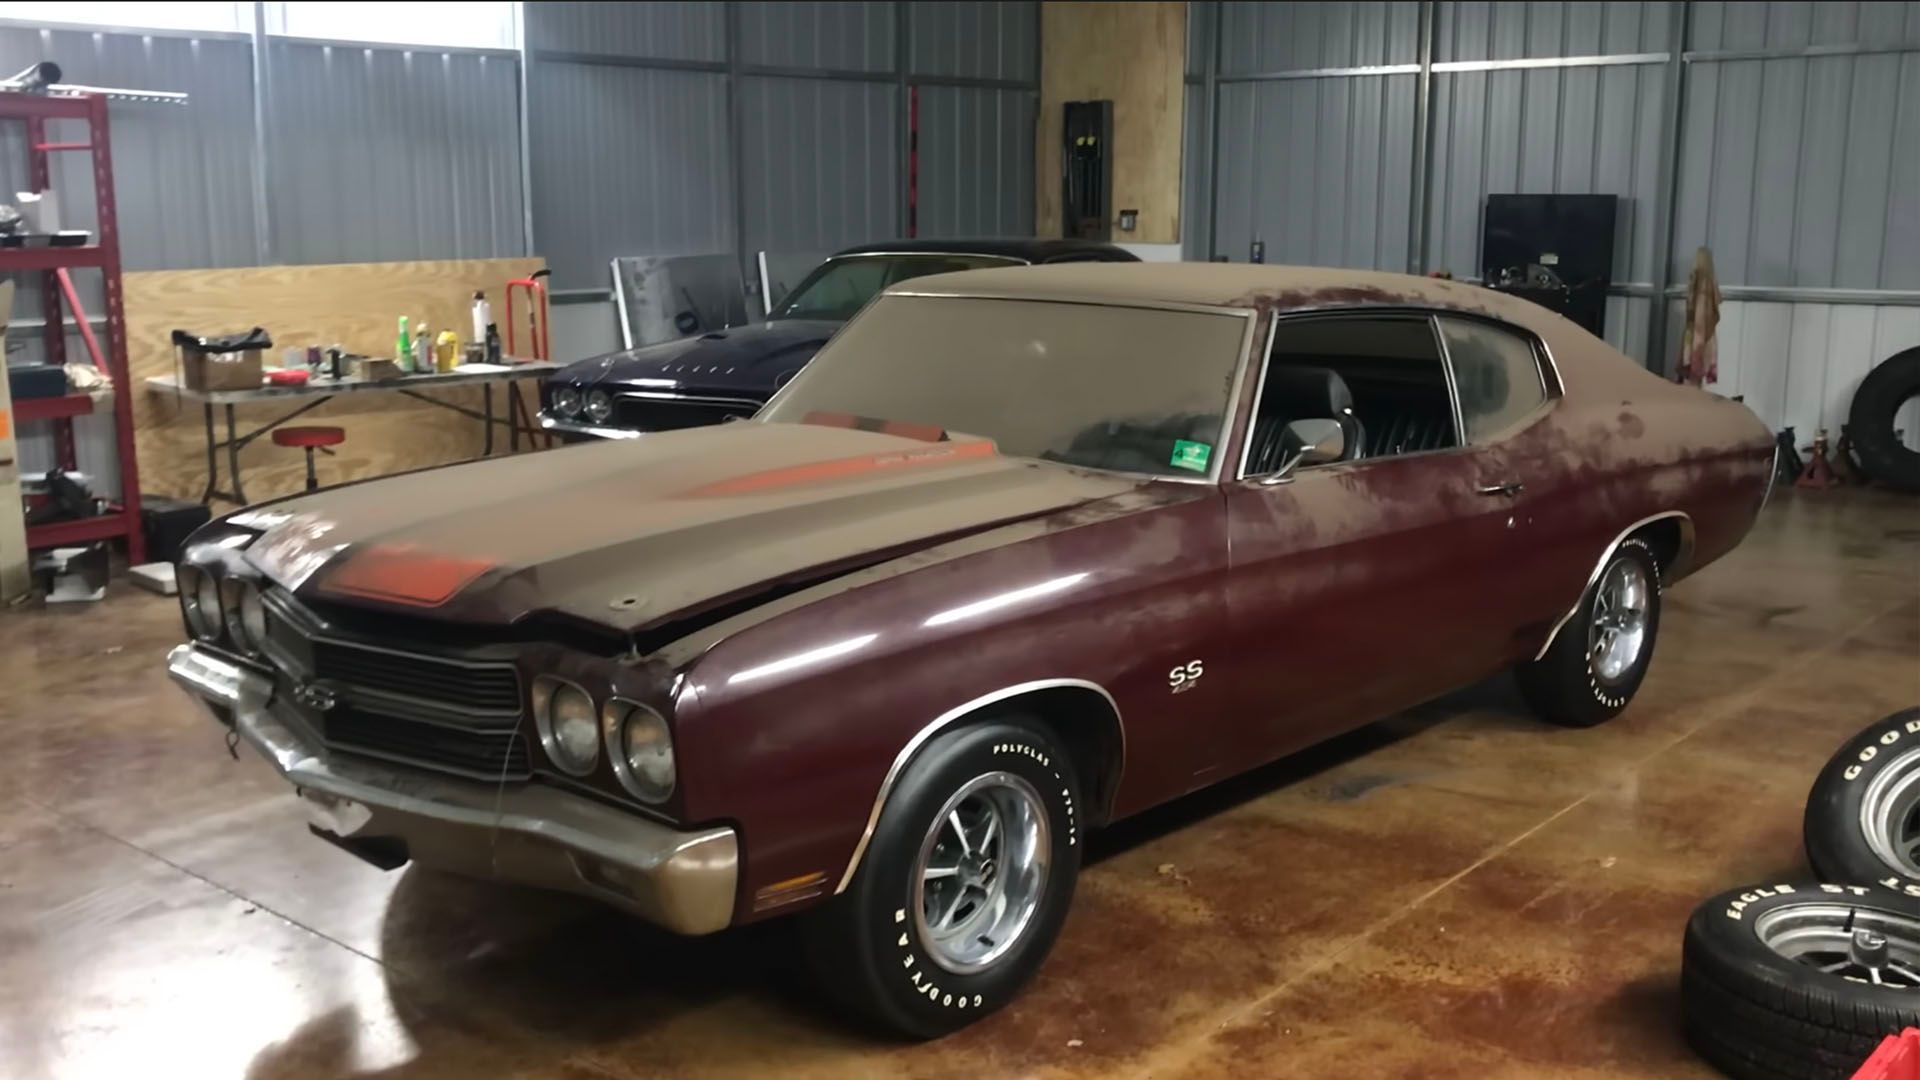 1967 Pontiac Firebird Always Stored in a Garage Flexes Rare Paint